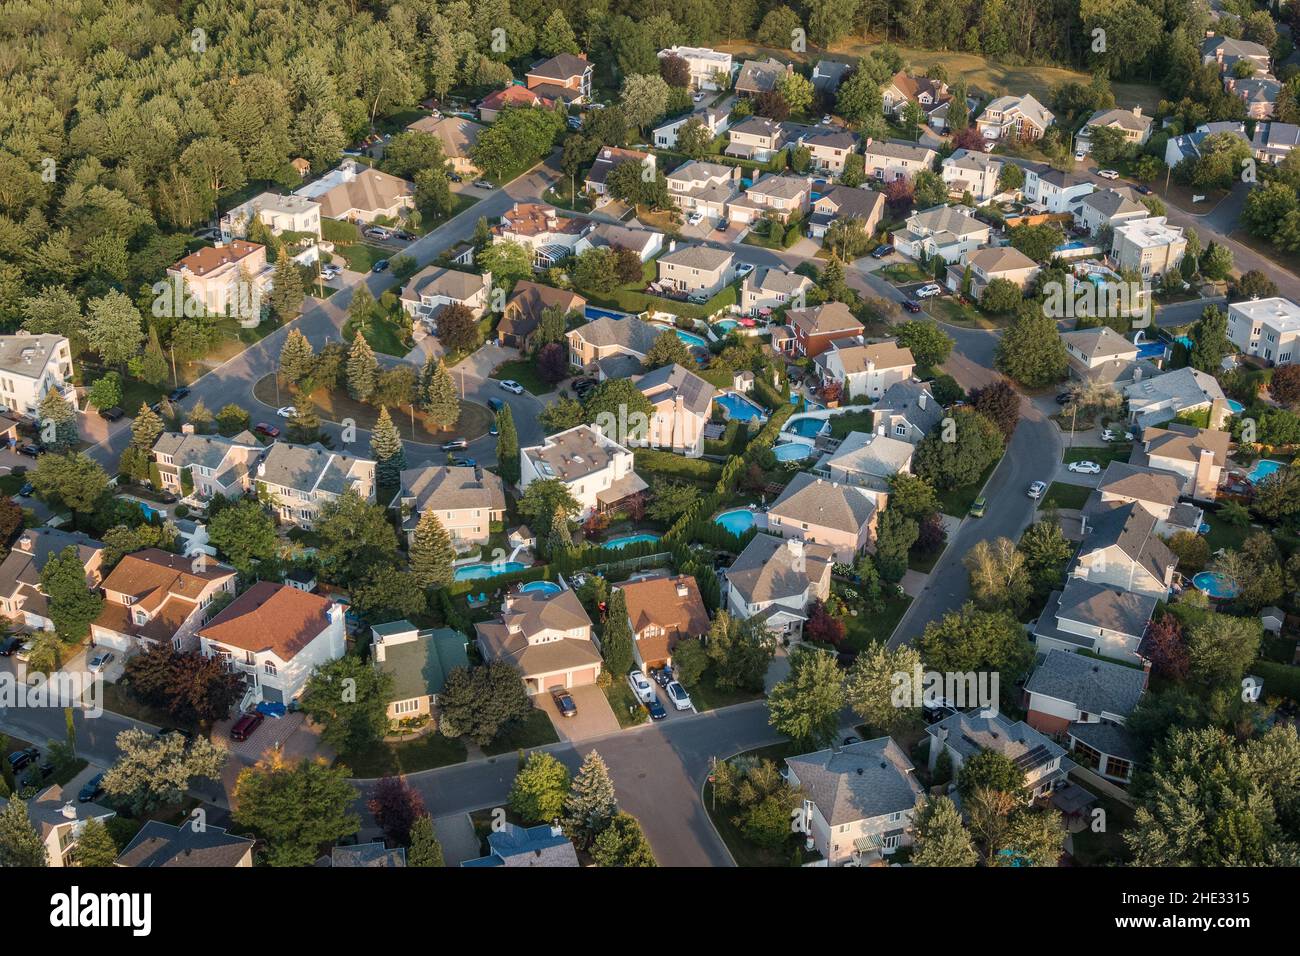 Vista aérea de las casas y calles en el hermoso barrio residencial de Montreal, Quebec, Canadá. Concepto de propiedad, vivienda y bienes raíces. Foto de stock